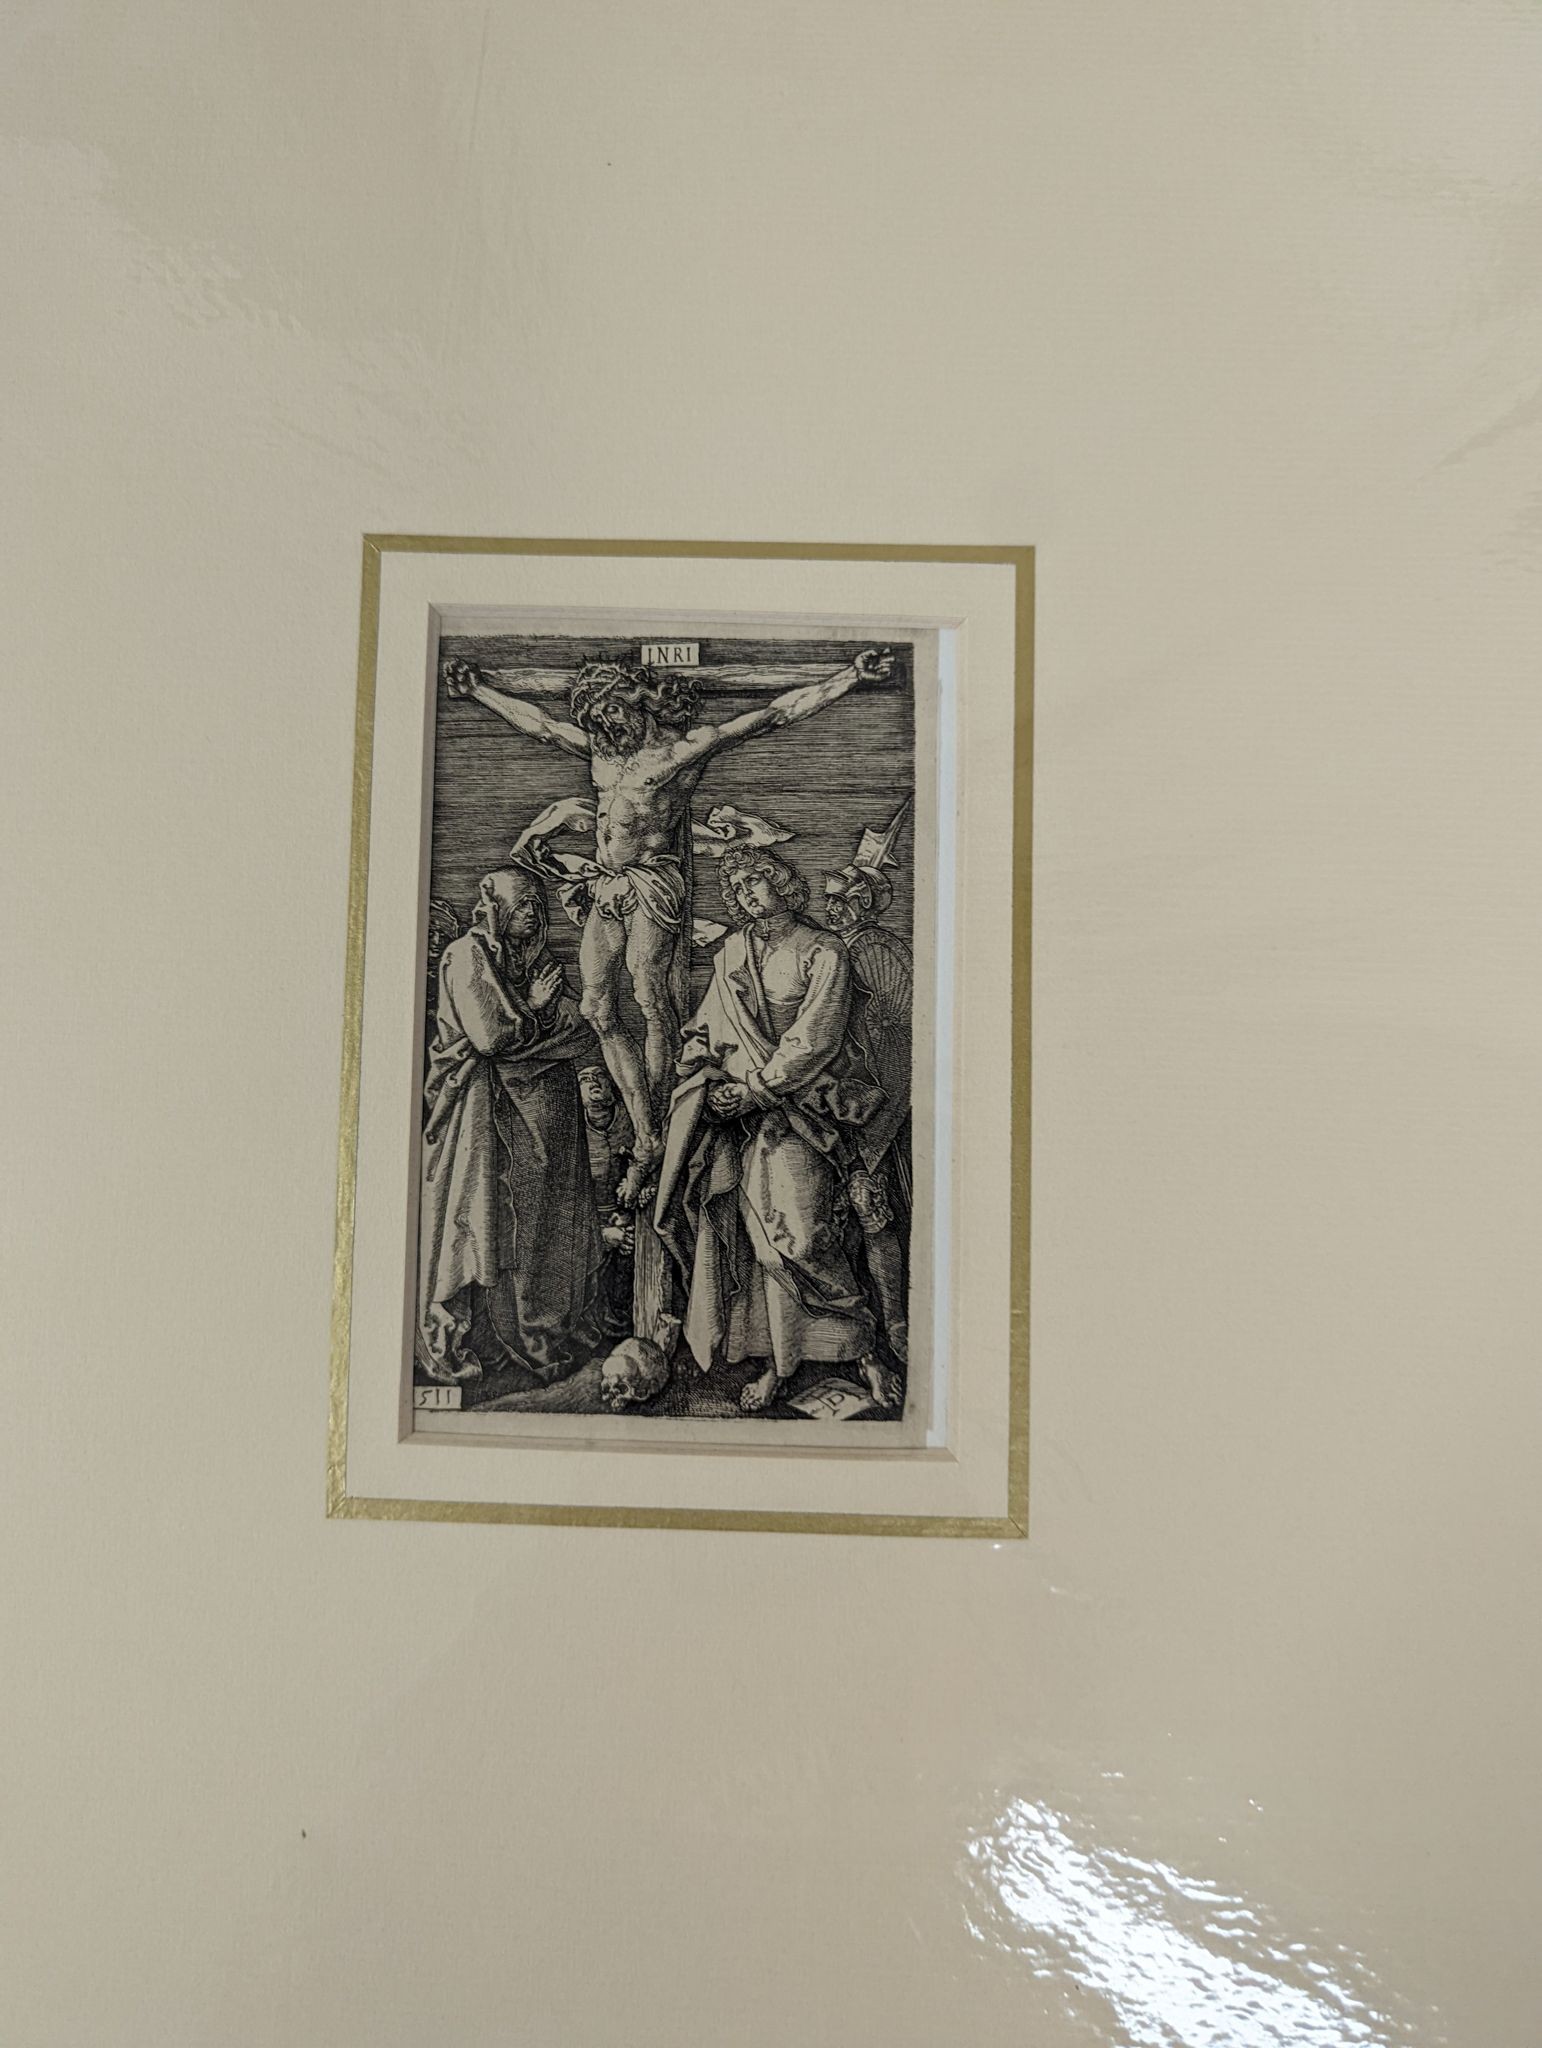 After Albrecht Durer, eleven engravings, largest 19 x 13.5cm, unframed